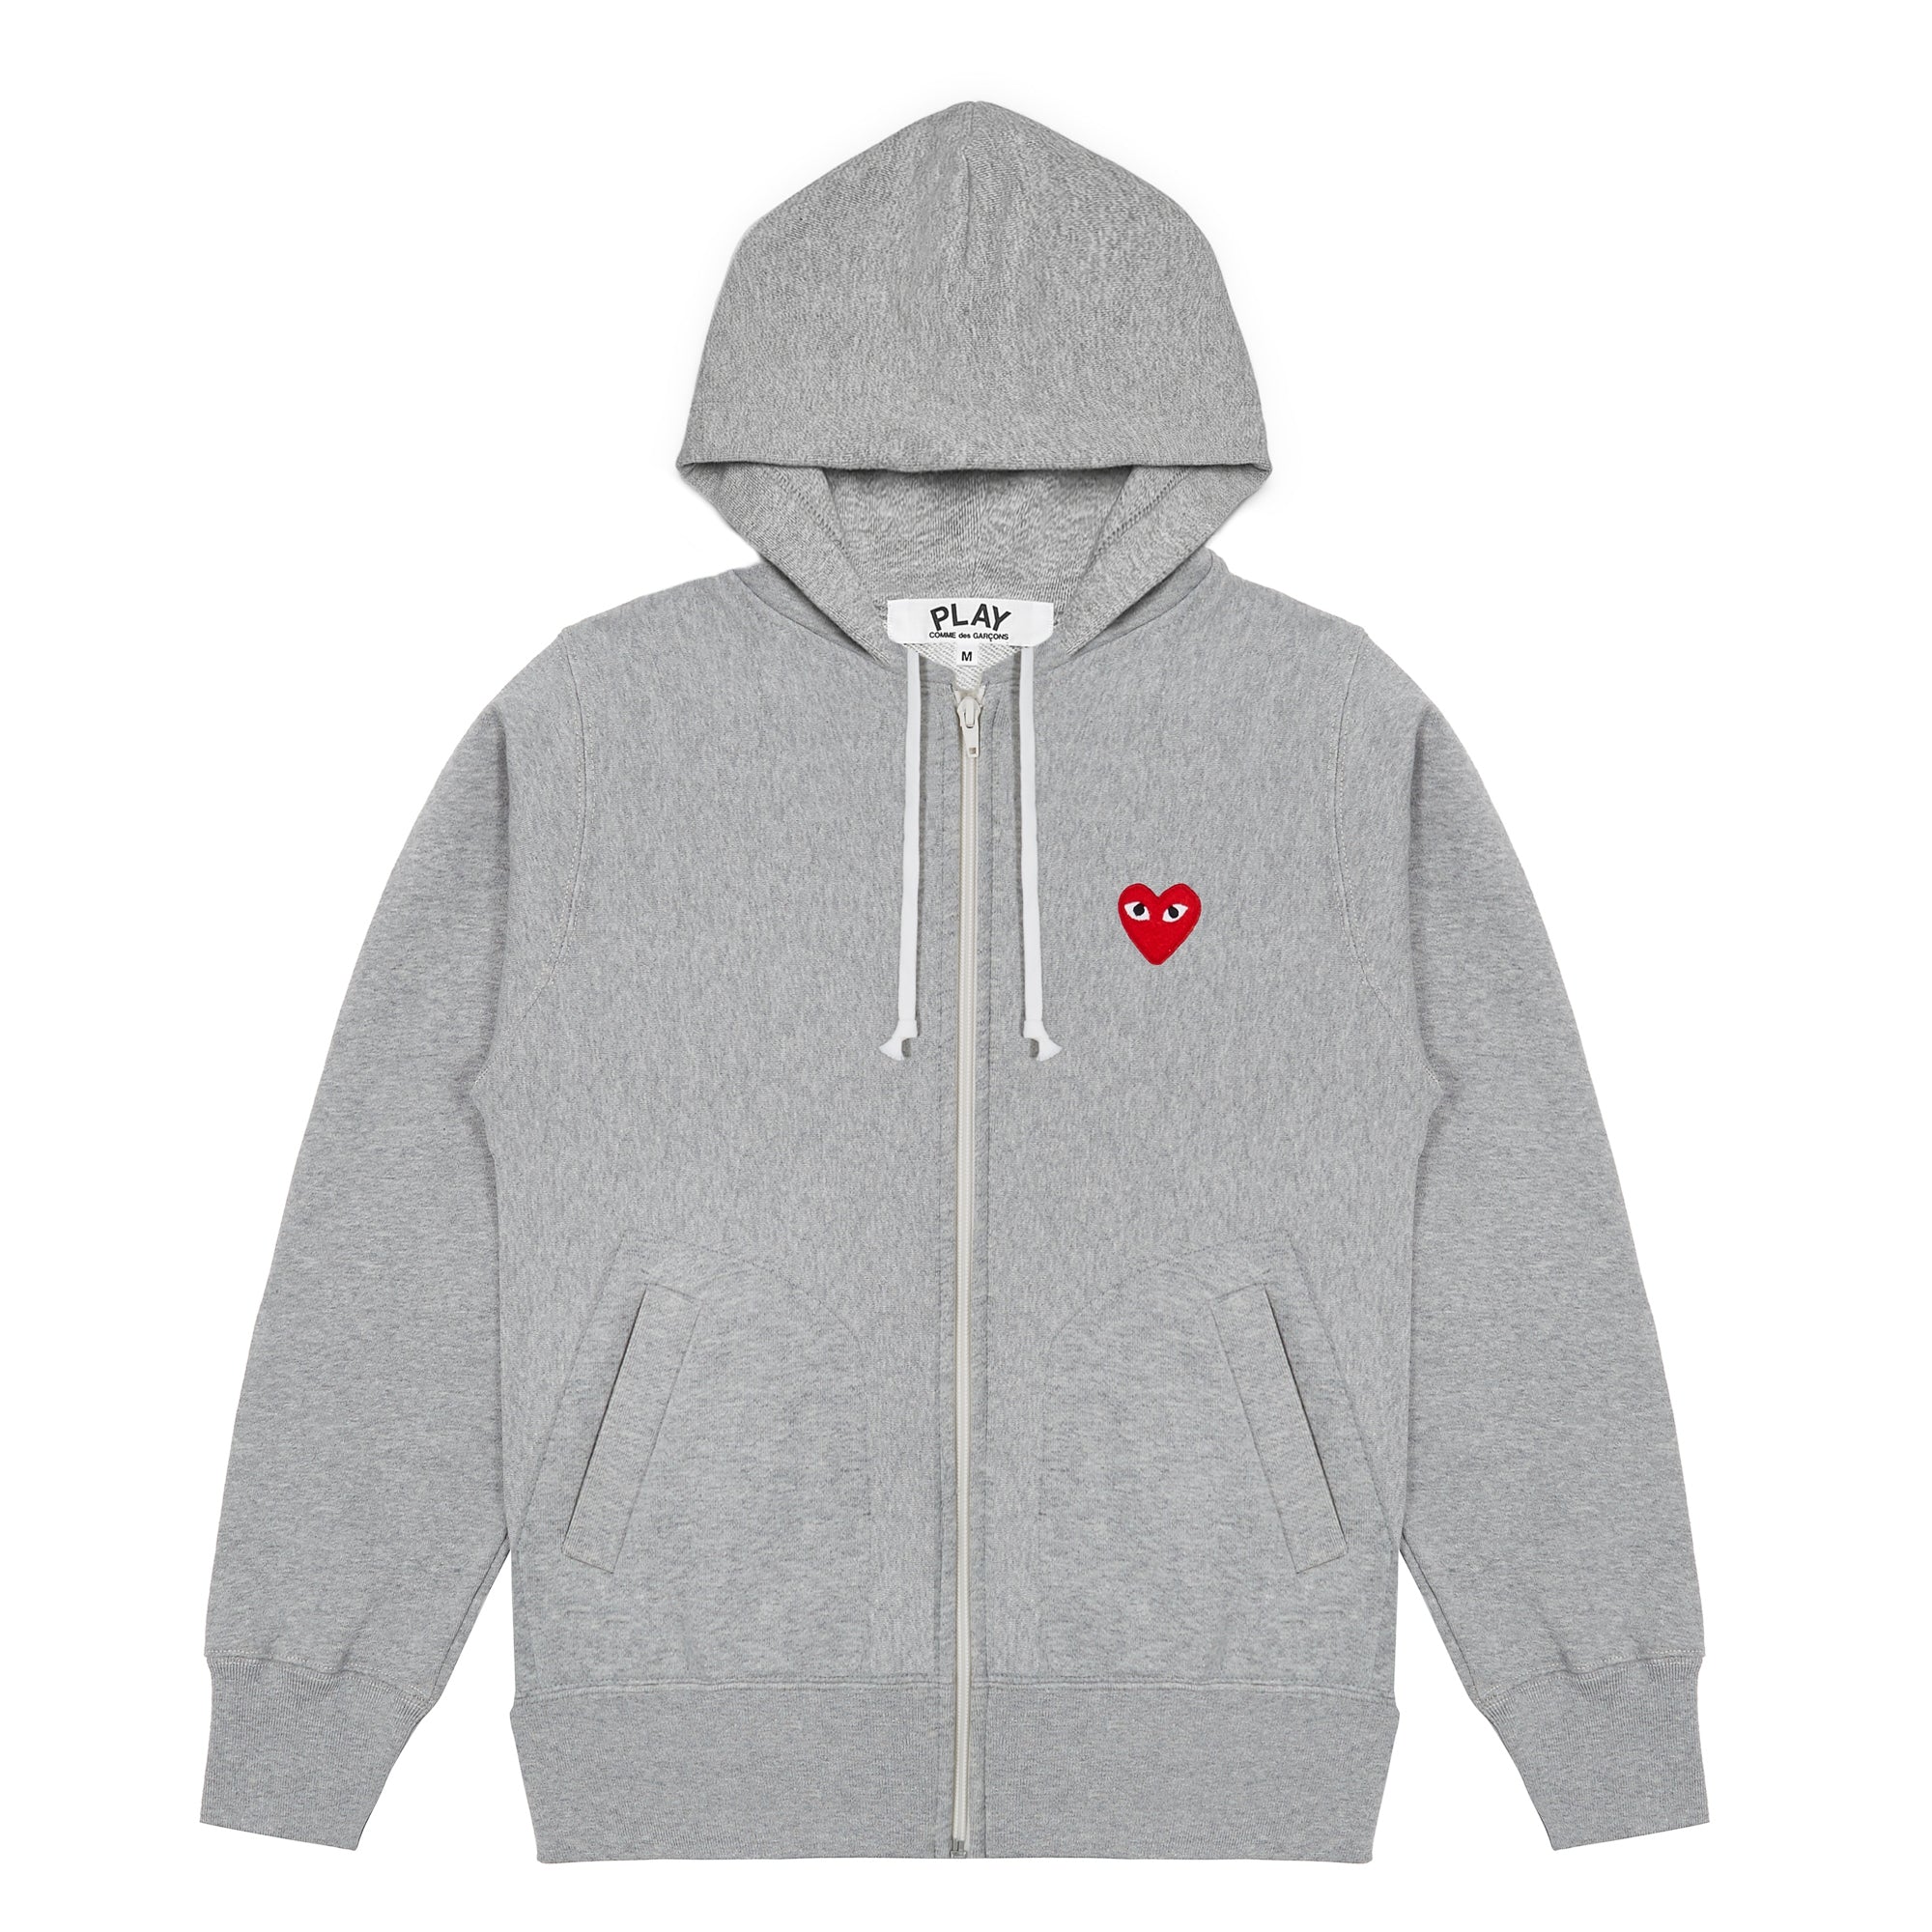 PLAY CDG - Hooded Sweatshirt With 5 Hearts - (Grey)